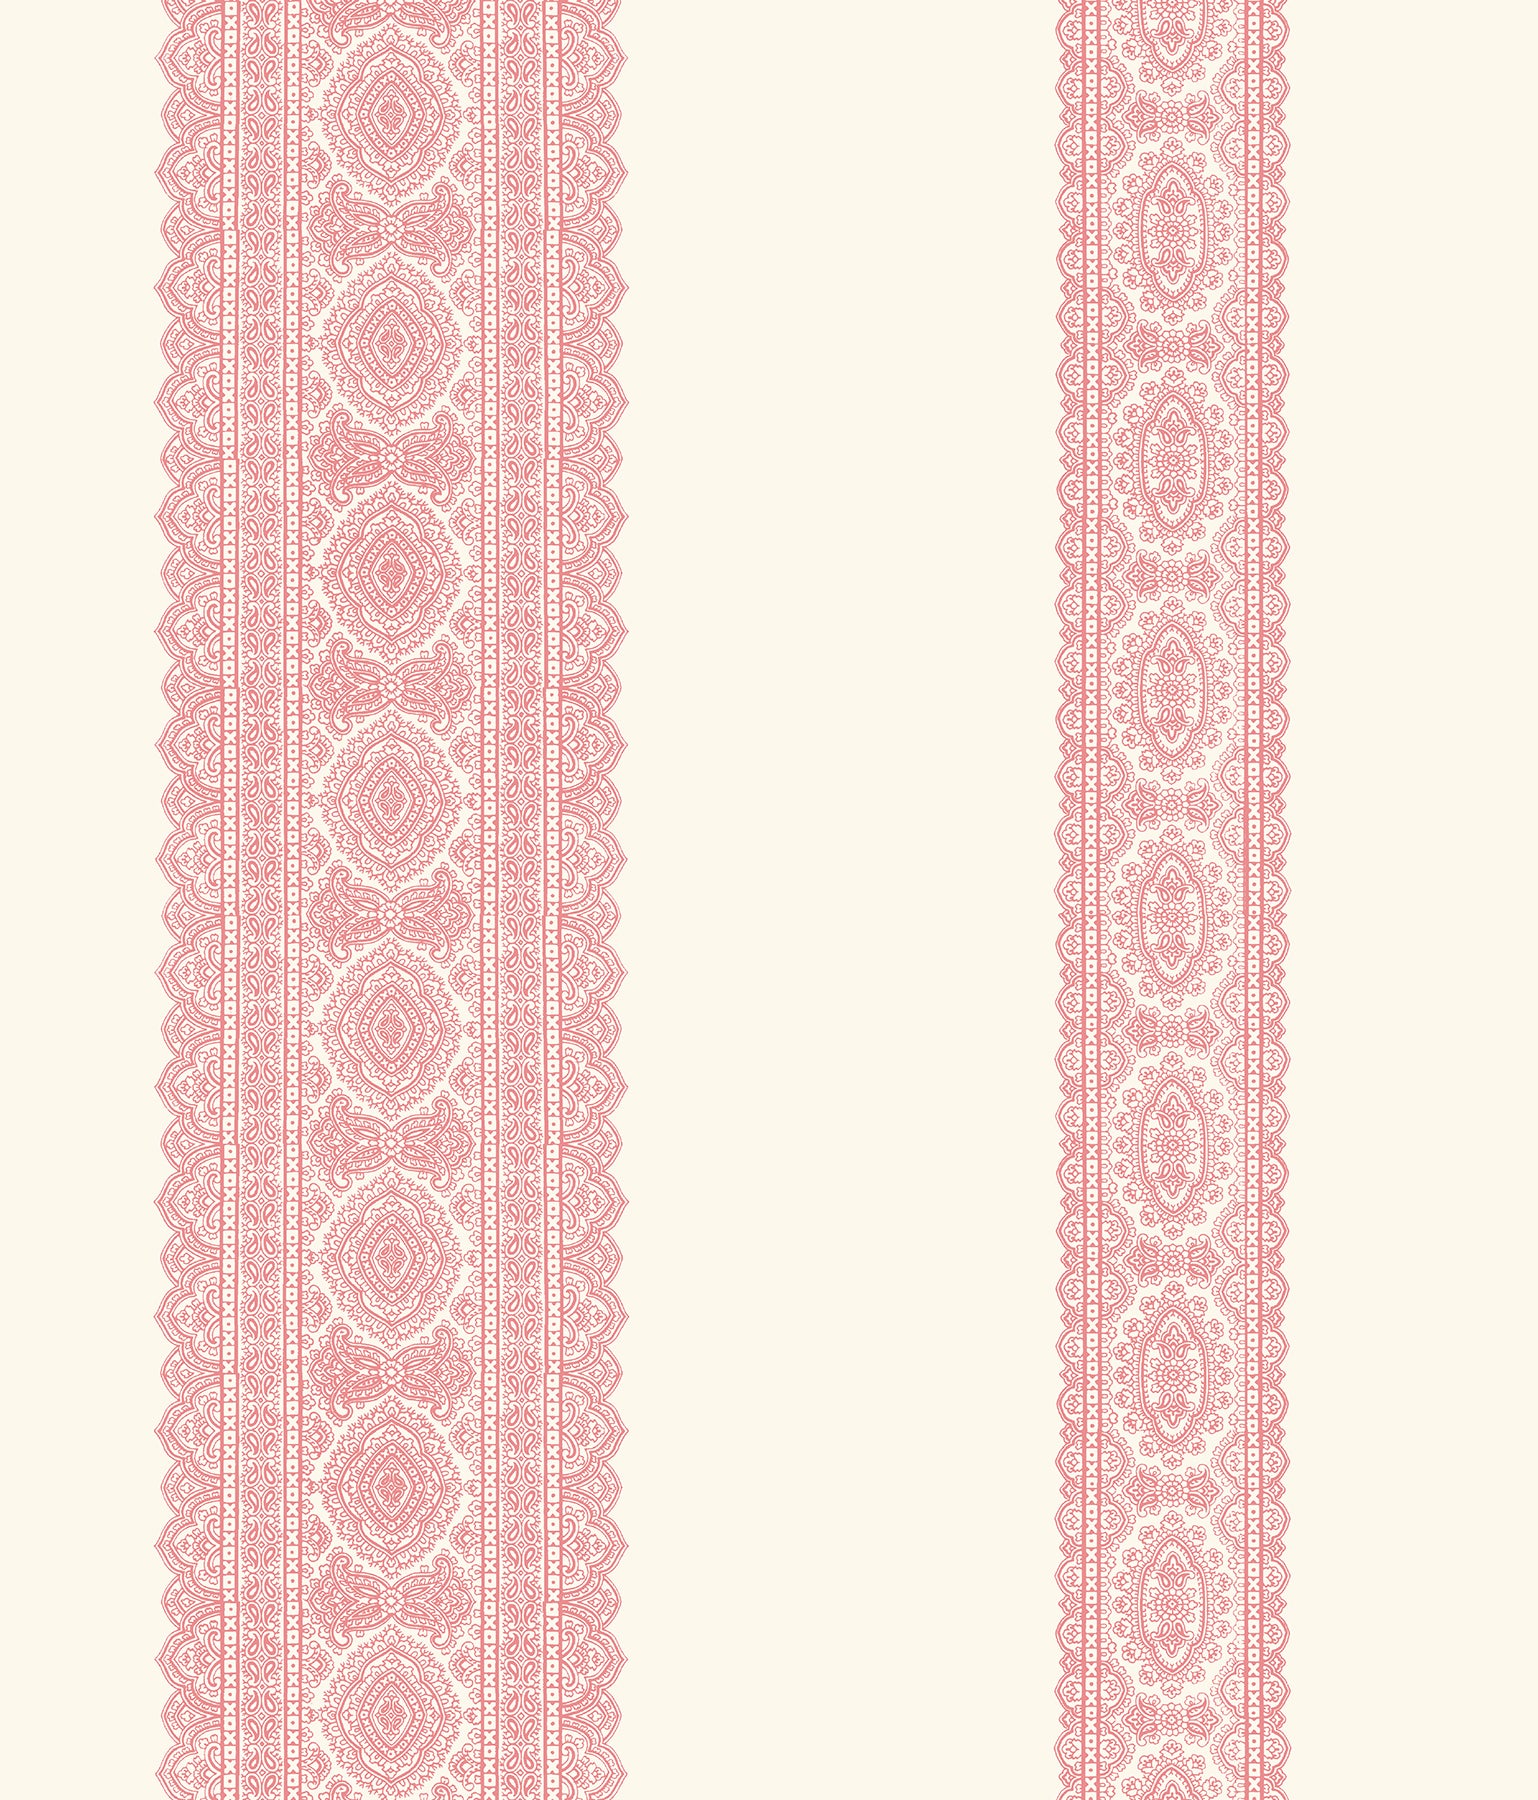 Order 1014-001831 Kismet Pink Brynn Pink Paisley Stripe Wallpaper A Street Prints Wallpaper